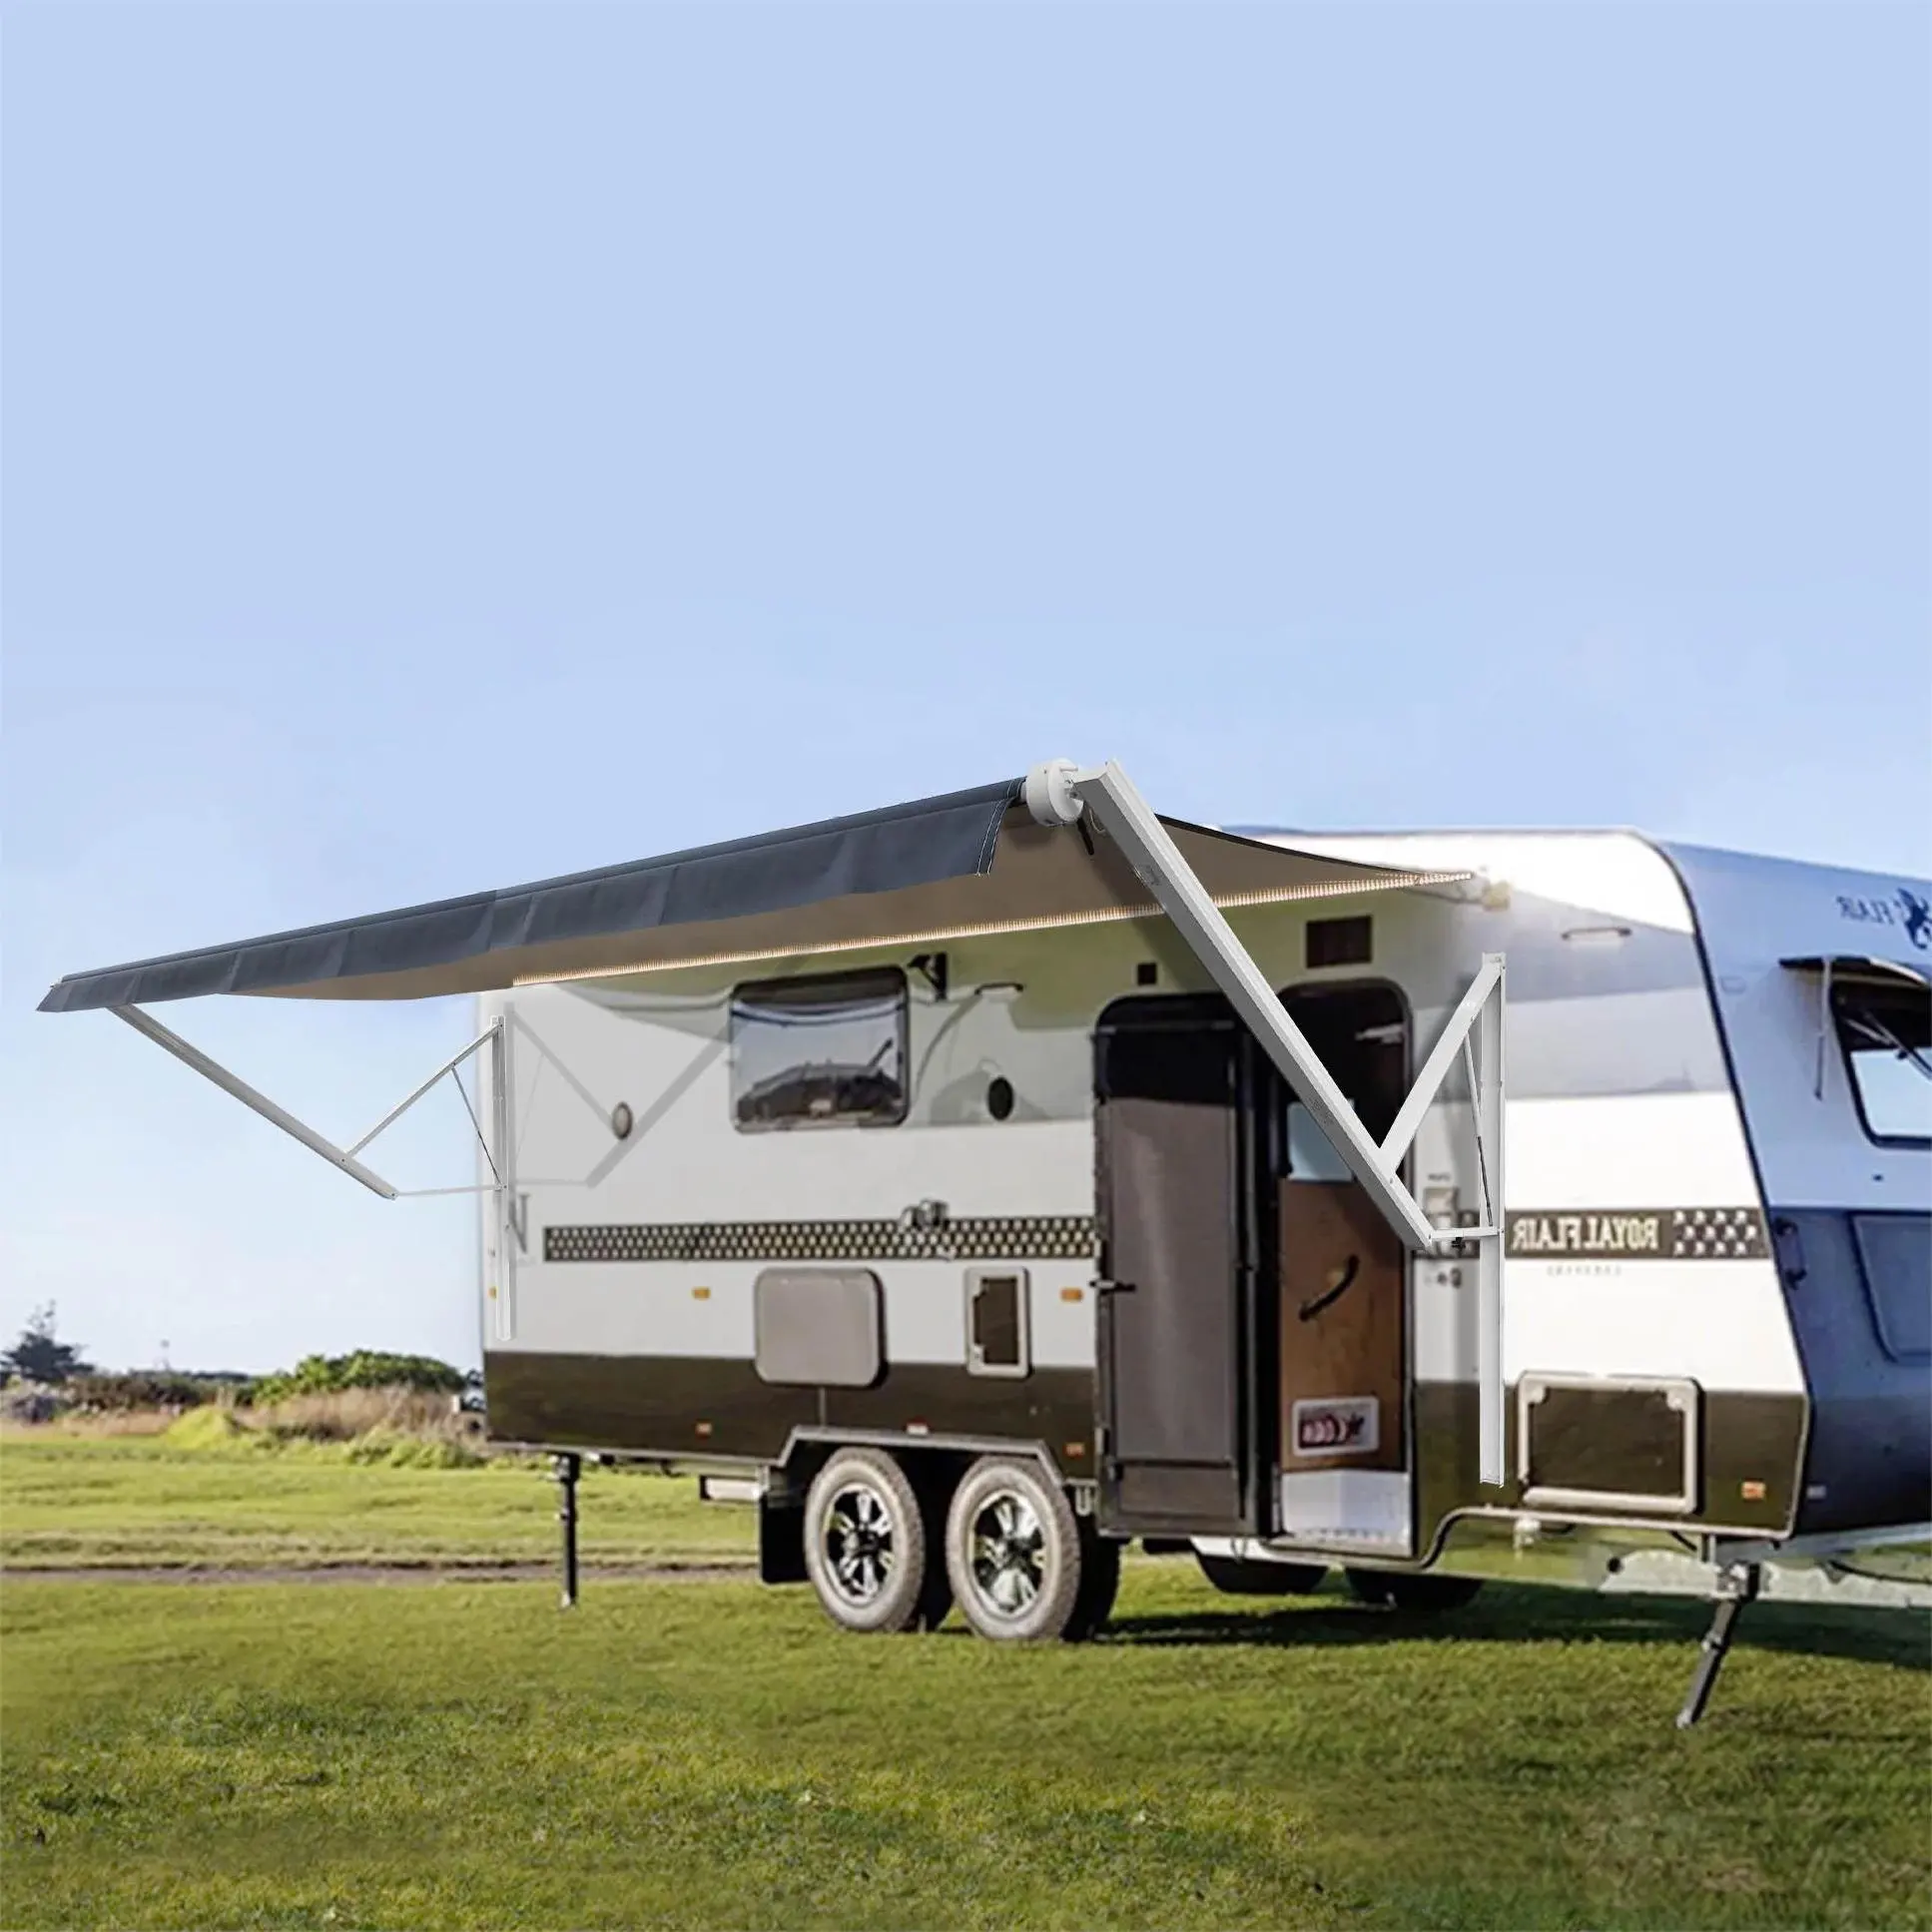 Wareda luxury caravan camping outdoor awning roll up retract rv camper van for parking